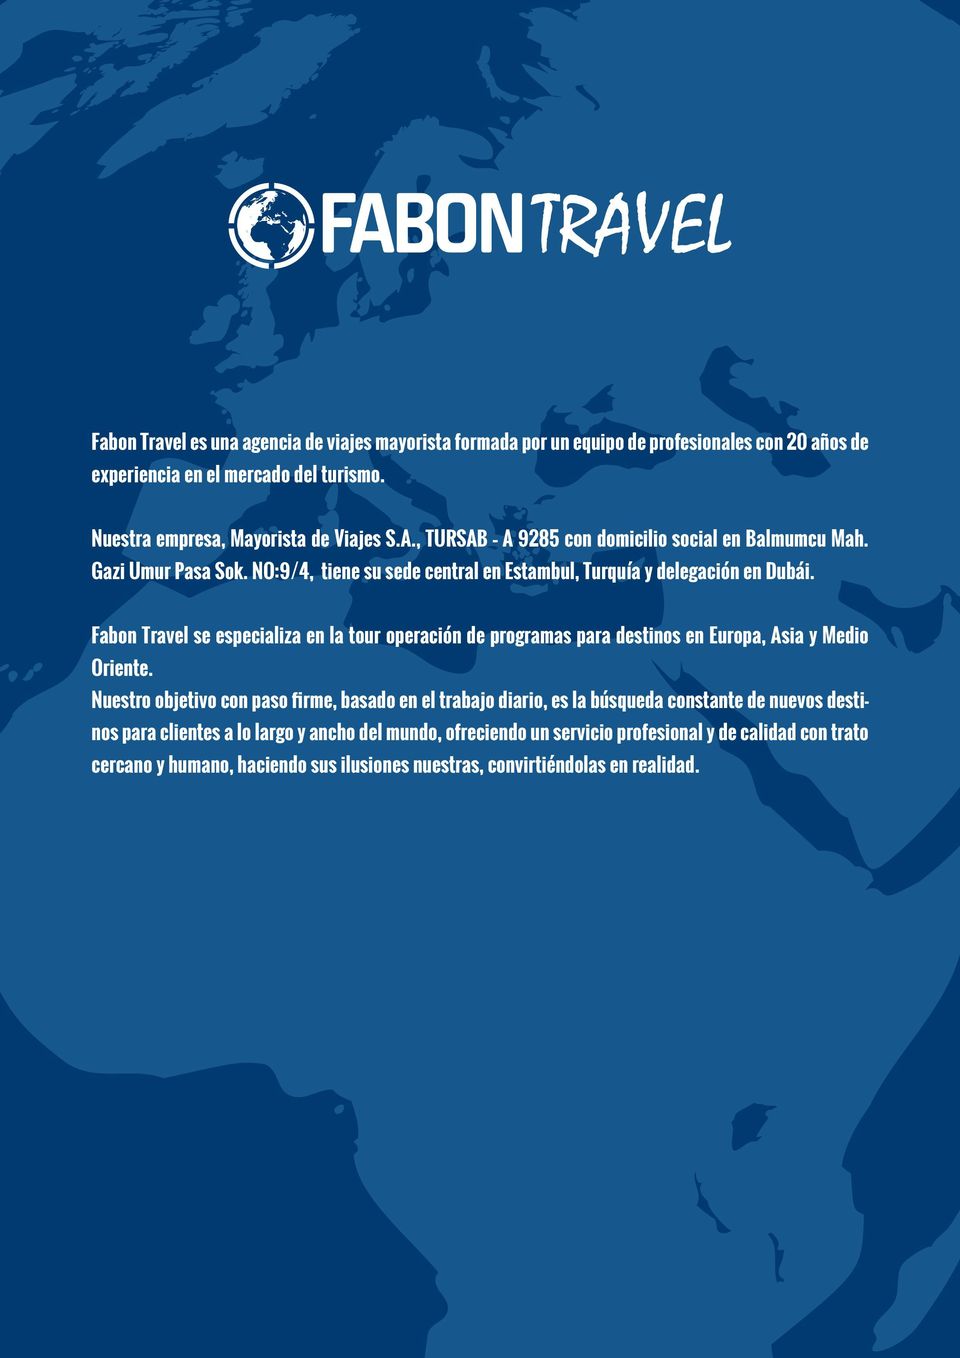 NO:9/4, tiene su sede central en Estambul, Turquía y delegación en Dubái. Fabon Travel se especializa en la tour operación de programas para destinos en Europa, Asia y Medio Oriente.